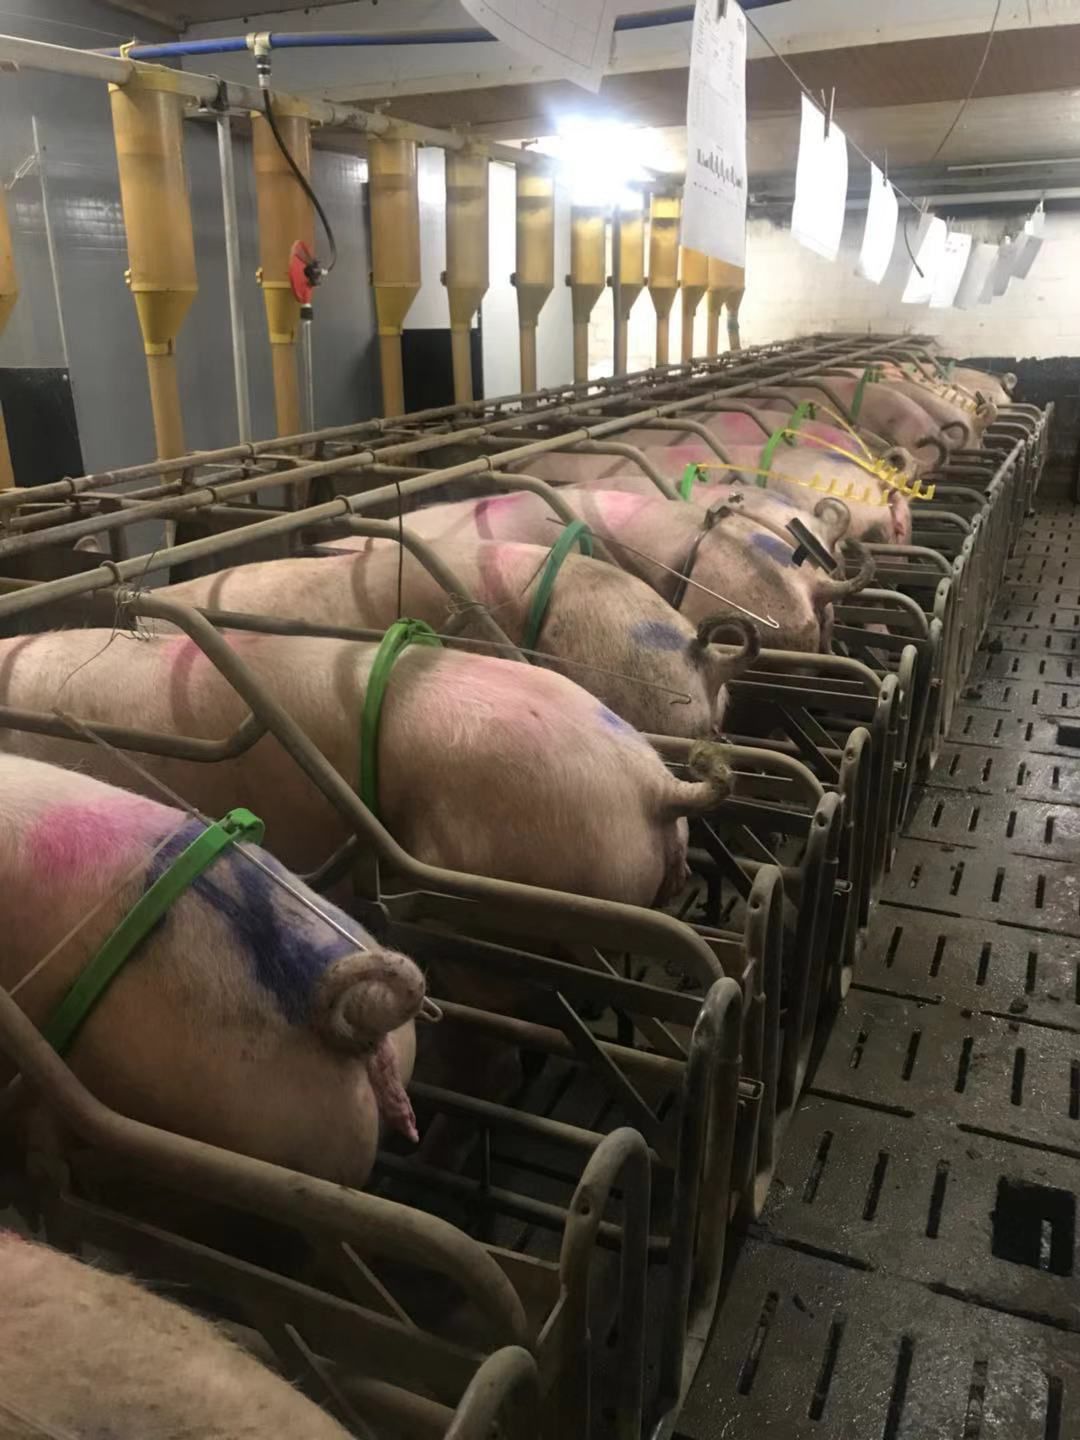 dahl猪场配种采用人工授精.每两周进行一次,每次平均30头母猪.